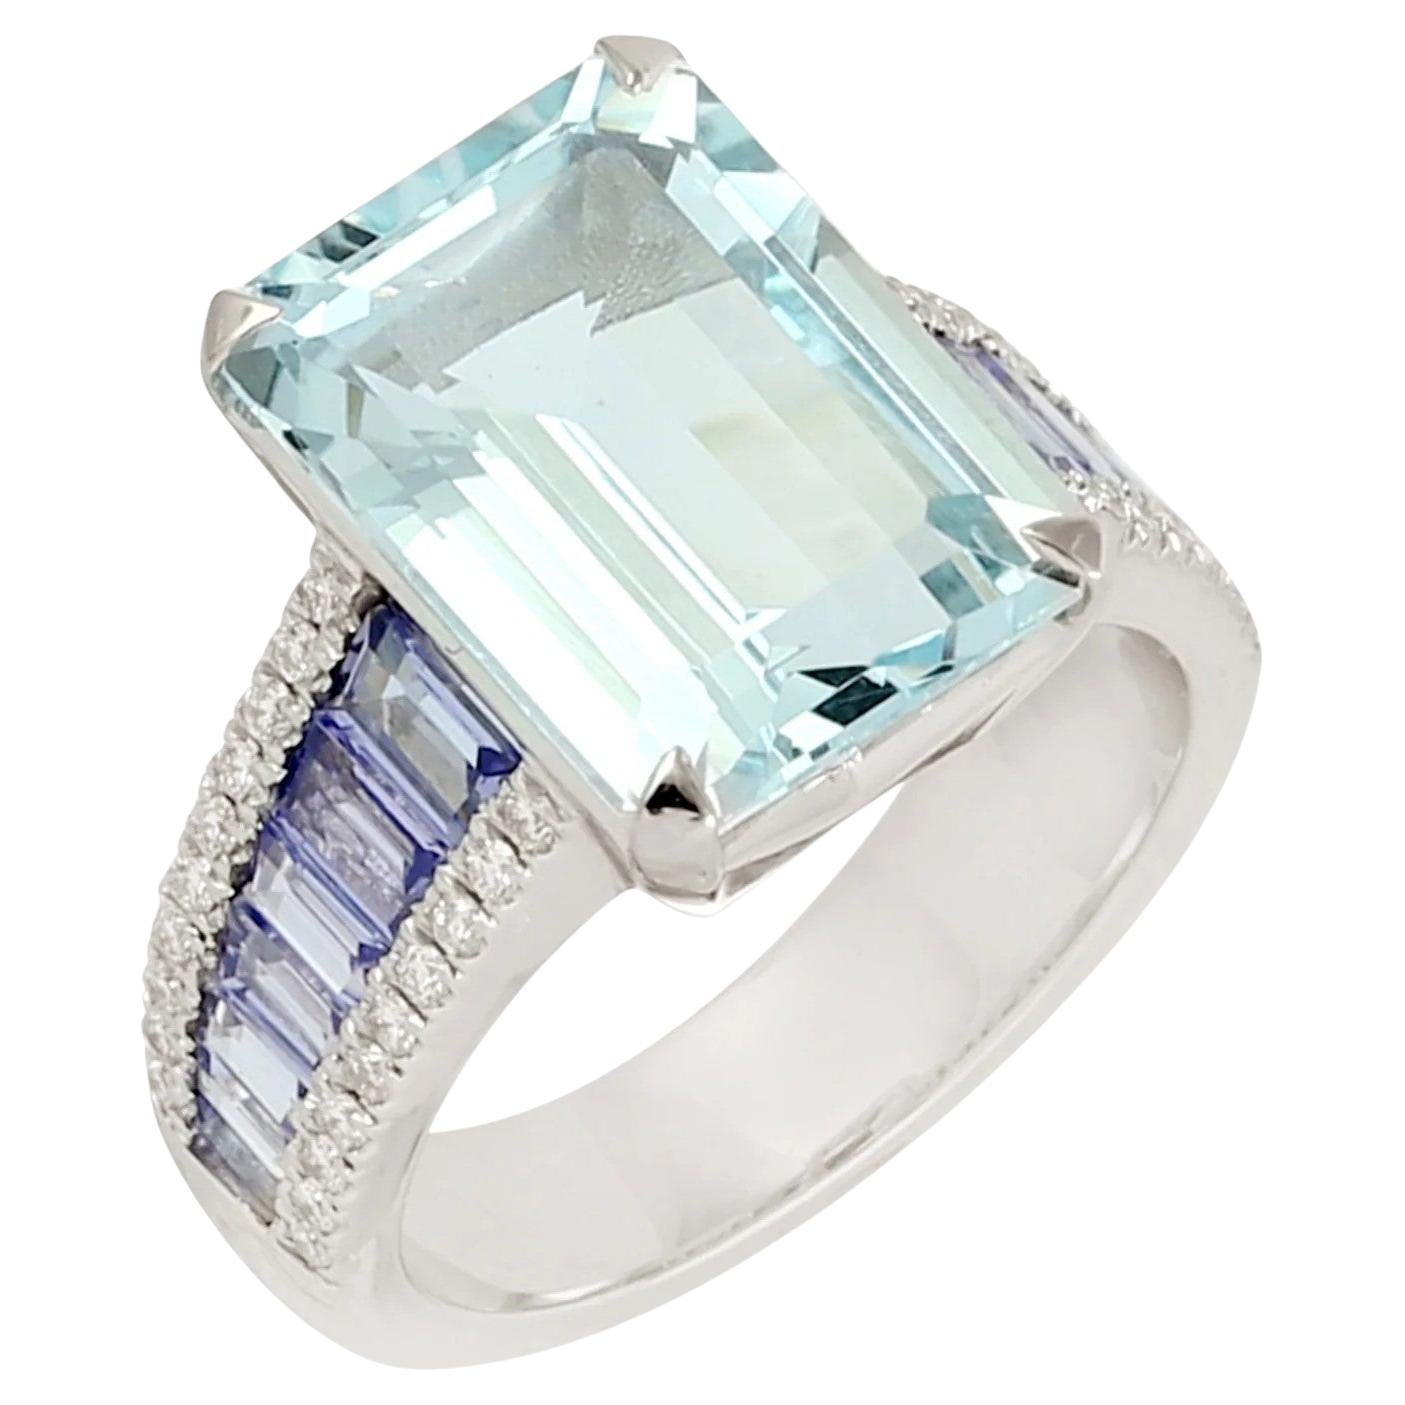  Meghna Jewels Emerald Cut Aquamarine Tanzanite Diamond 14 Karat Gold Ring